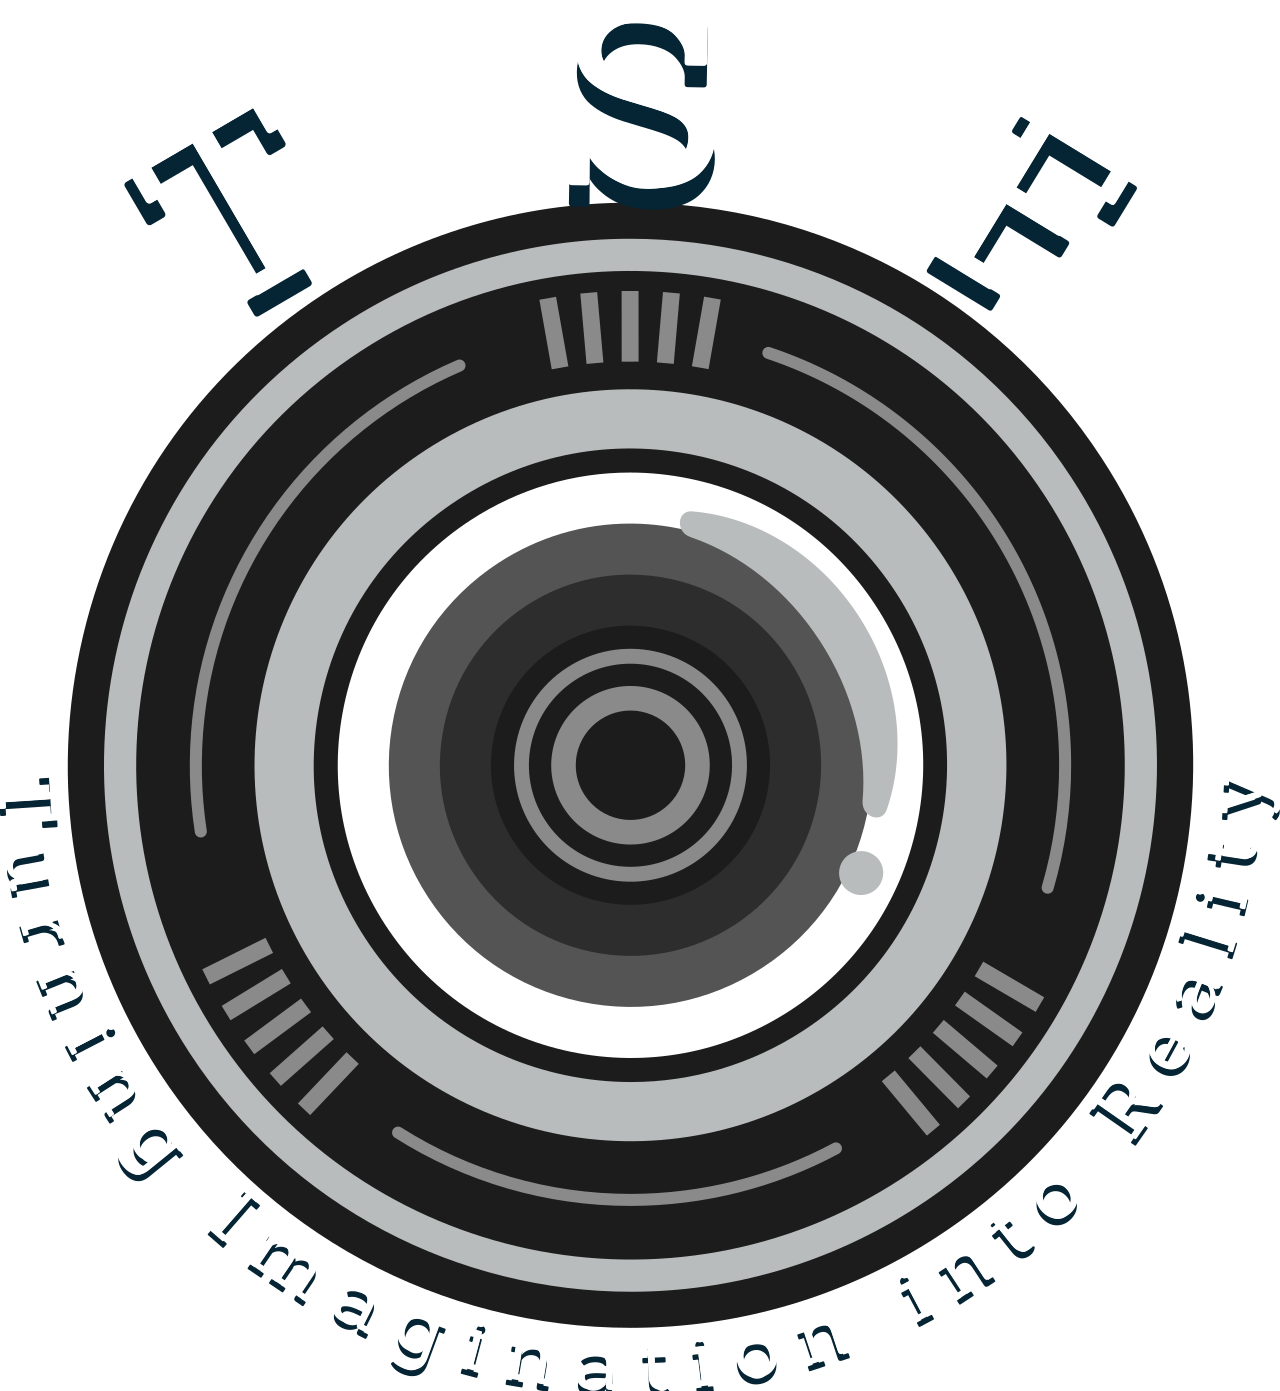 TSF's logo